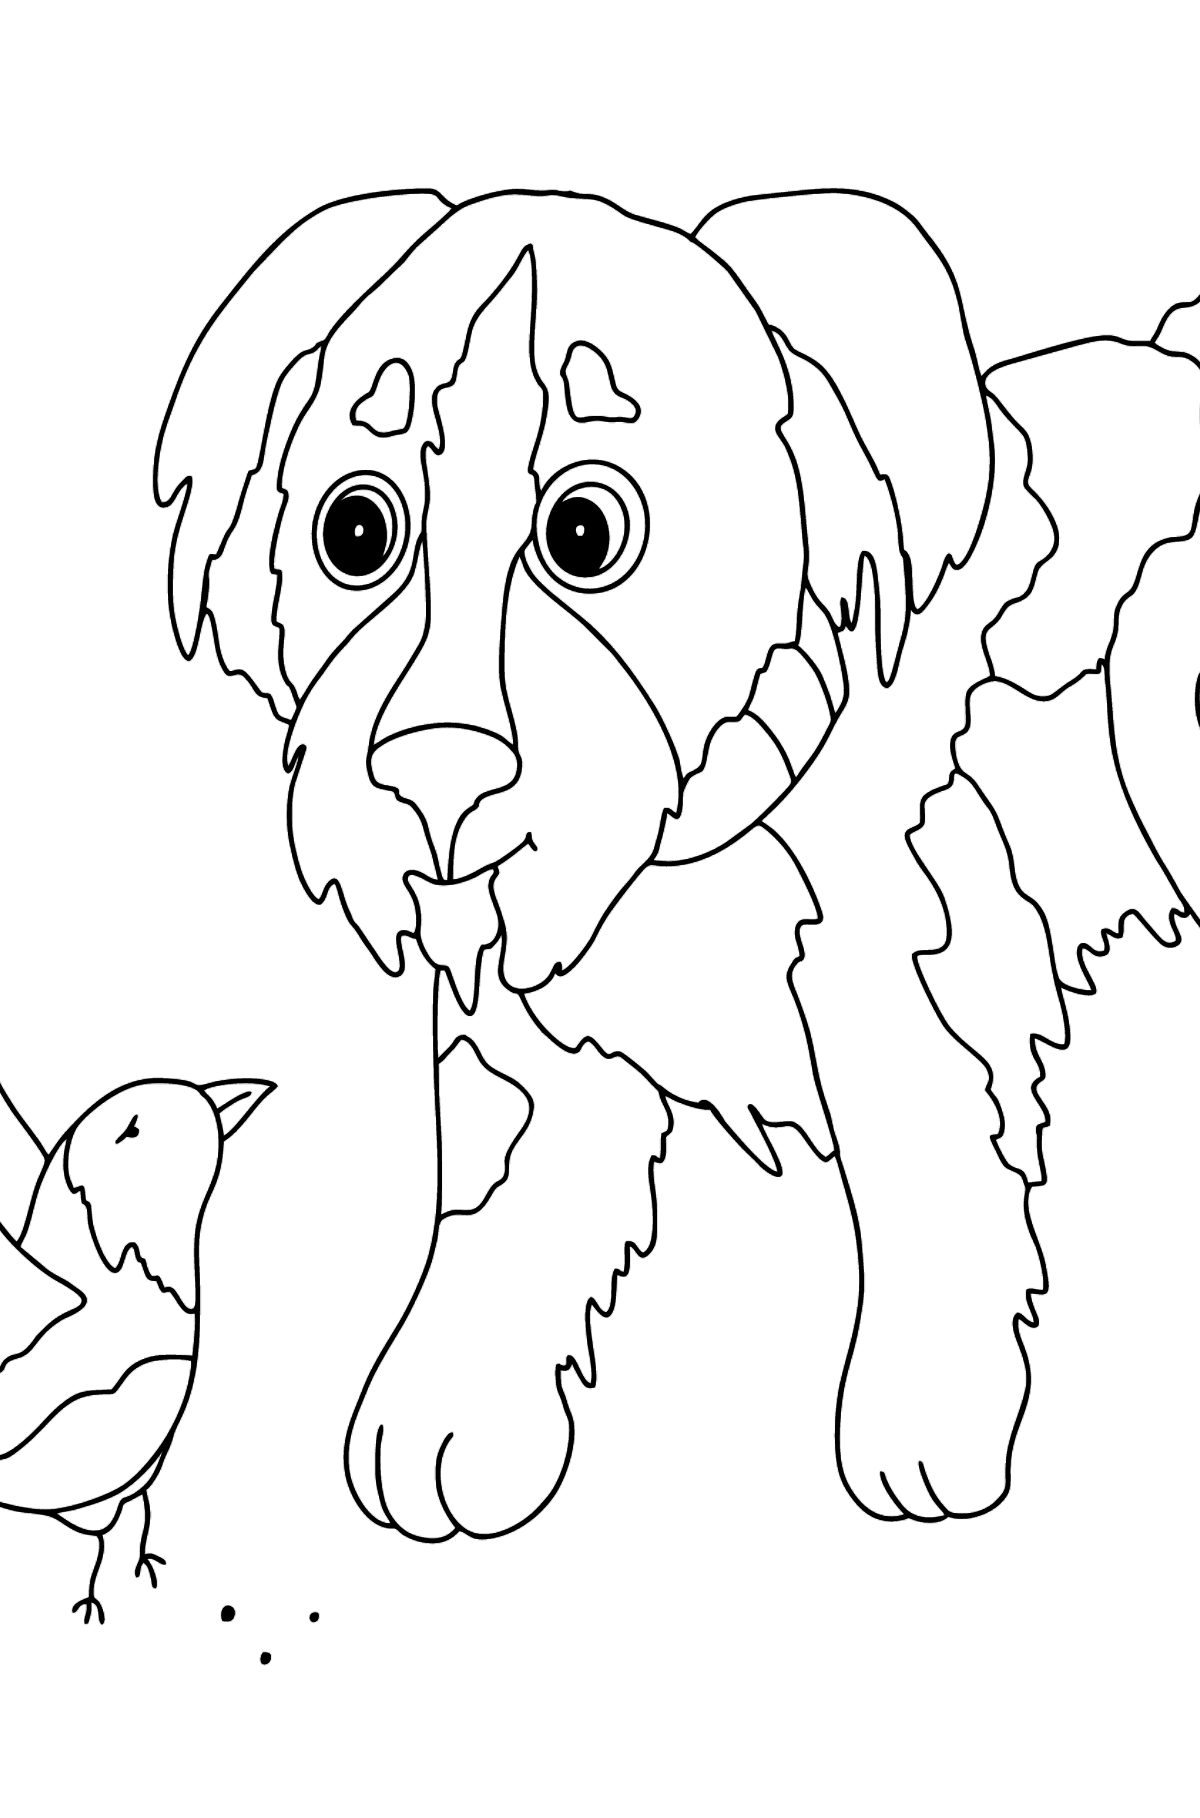 Desenho de cachorrinho adorável para colorir - Imagens para Colorir para Crianças